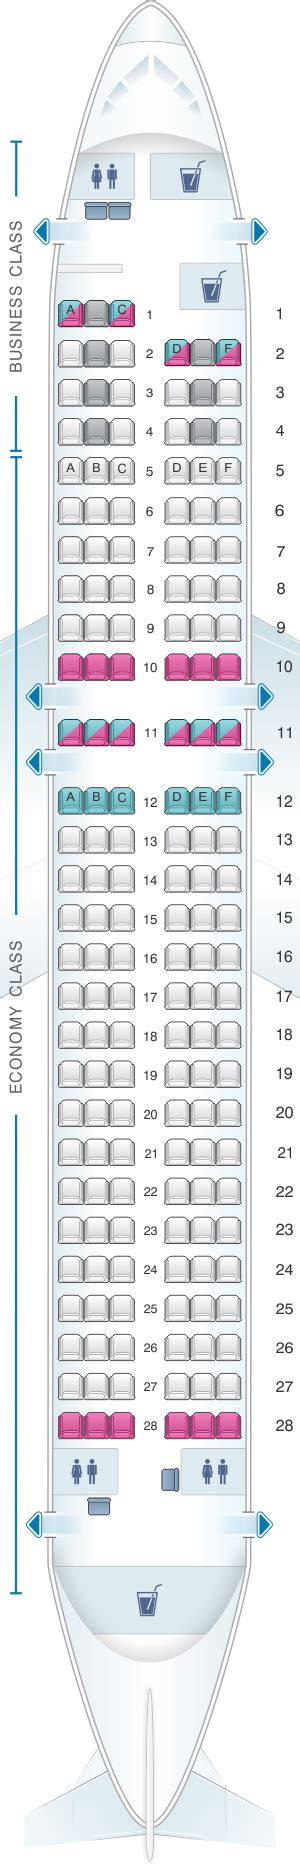 Plan de cabine Finnair Airbus A320 | SeatMaestro.fr